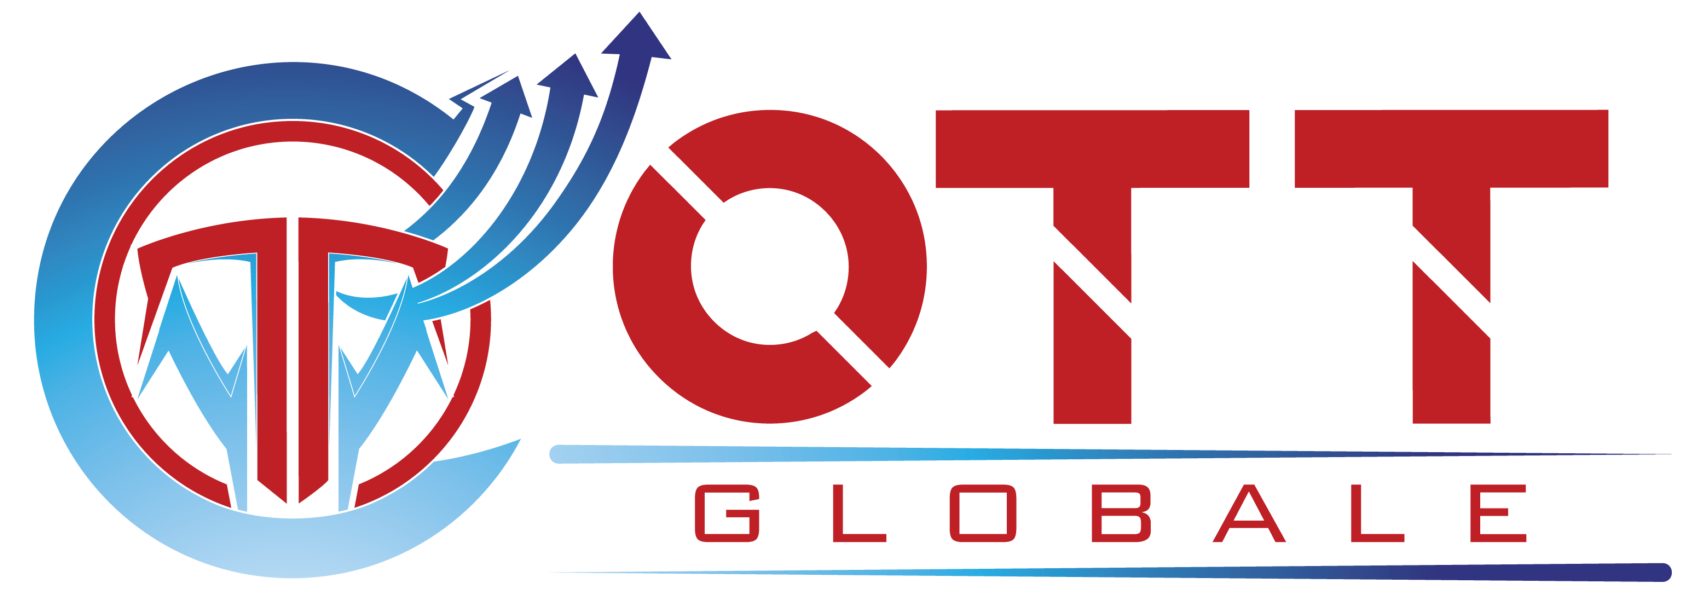 OTT Globale : Est une entreprise qui fabrique et commercialise machines utilisés dans le domaine de BTP et construction Centrale a Béton « machine a parpaing, machine a pavé, machine de bordure, Centrale a Béton, Concasseur ».